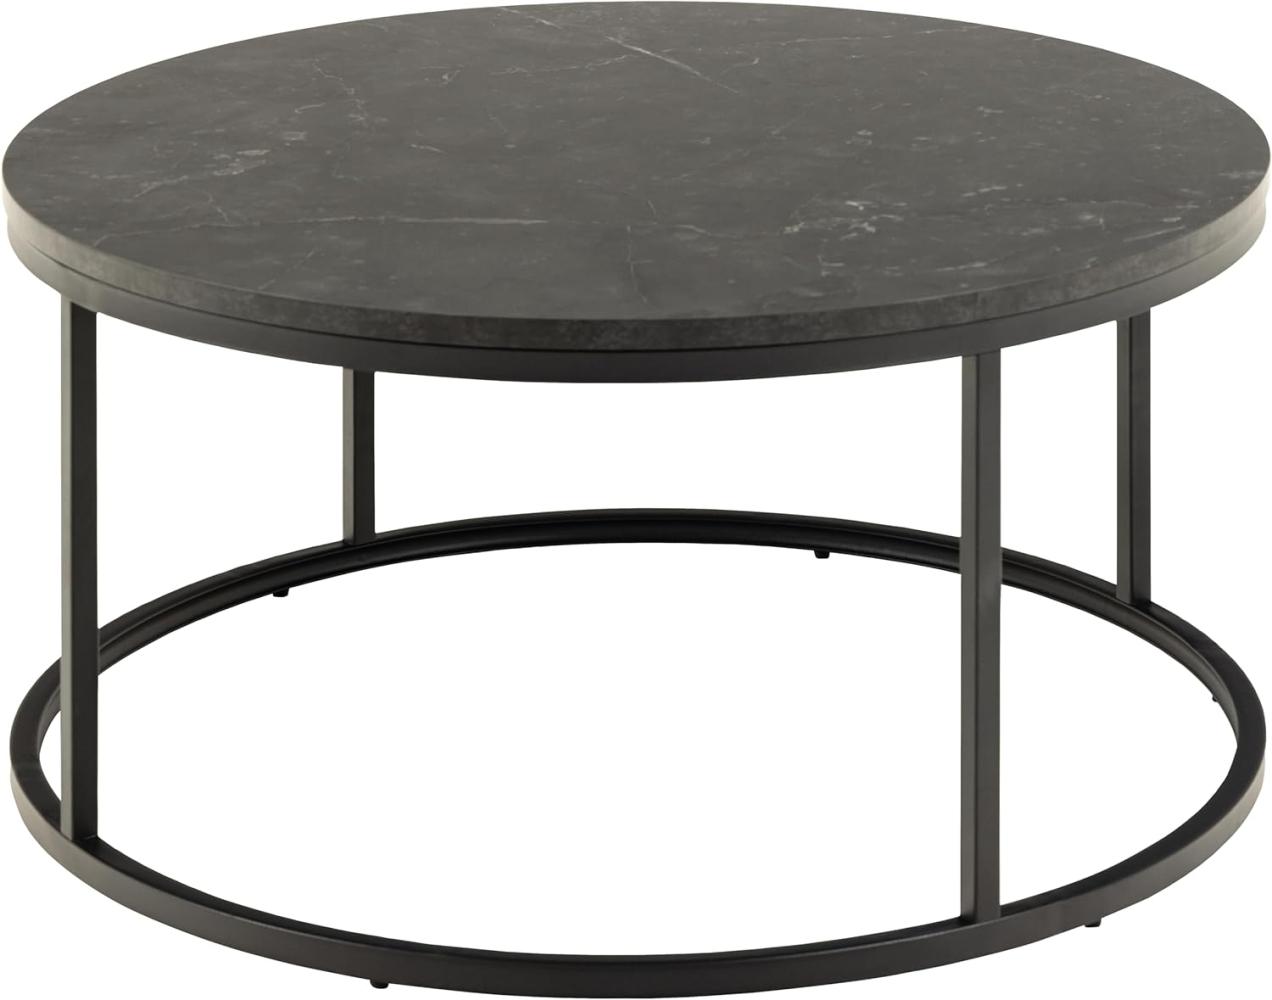 AC Design Furniture Spencer Couchtisch Rund mit Tischplatte in Schwarzer Marmoroptik und Schwarzem Stahlsockel, Moderner Beistelltisch, Wohnzimmermöbel, Ø: 80 x H: 40 cm Bild 1